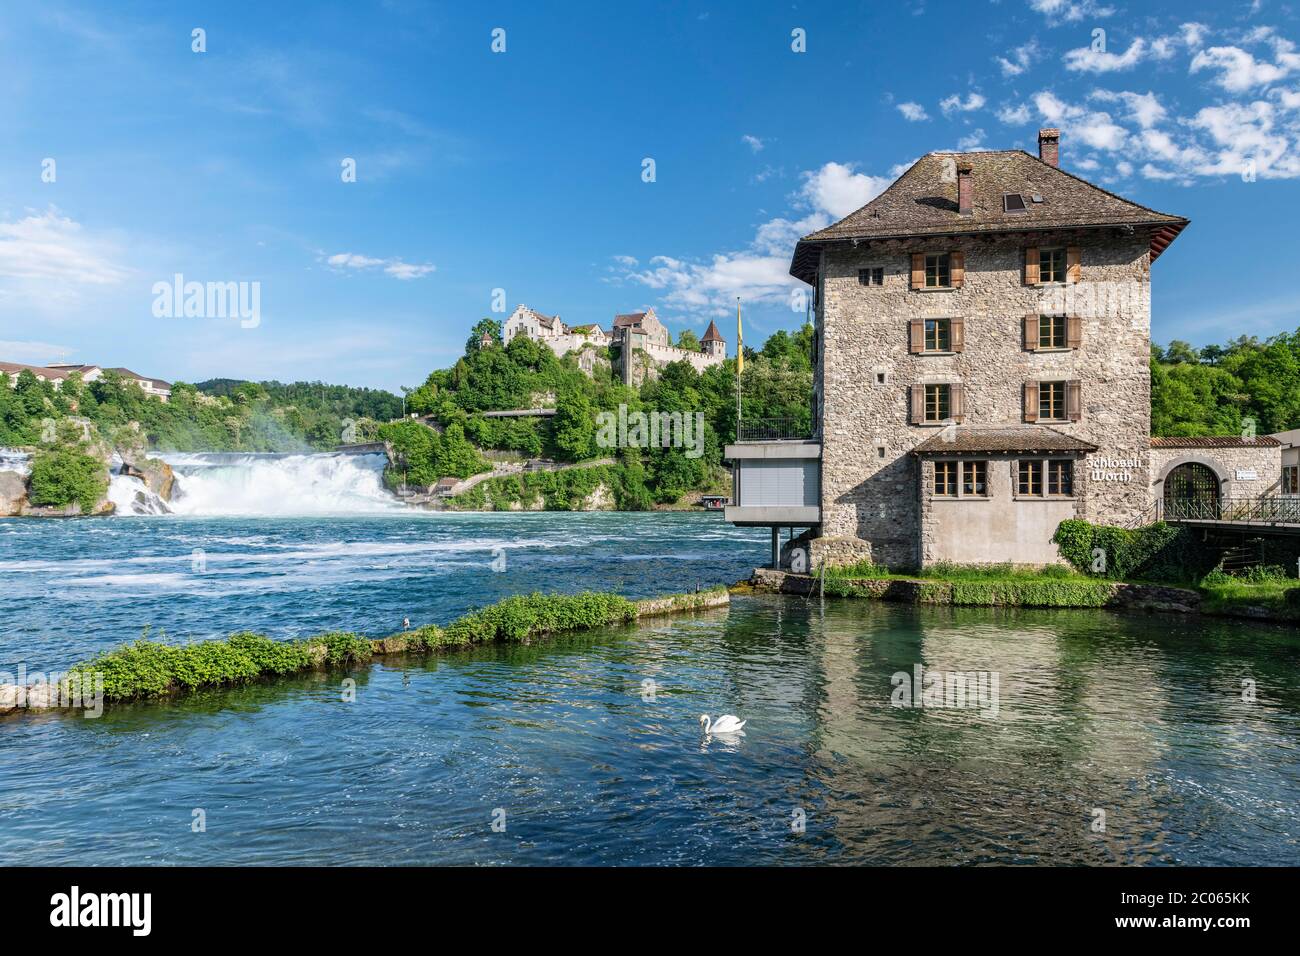 Rhine Falls with Laufen Castle and Schloessli Woerth, near Schaffhausen, Canton Schaffhausen, Switzerland Stock Photo